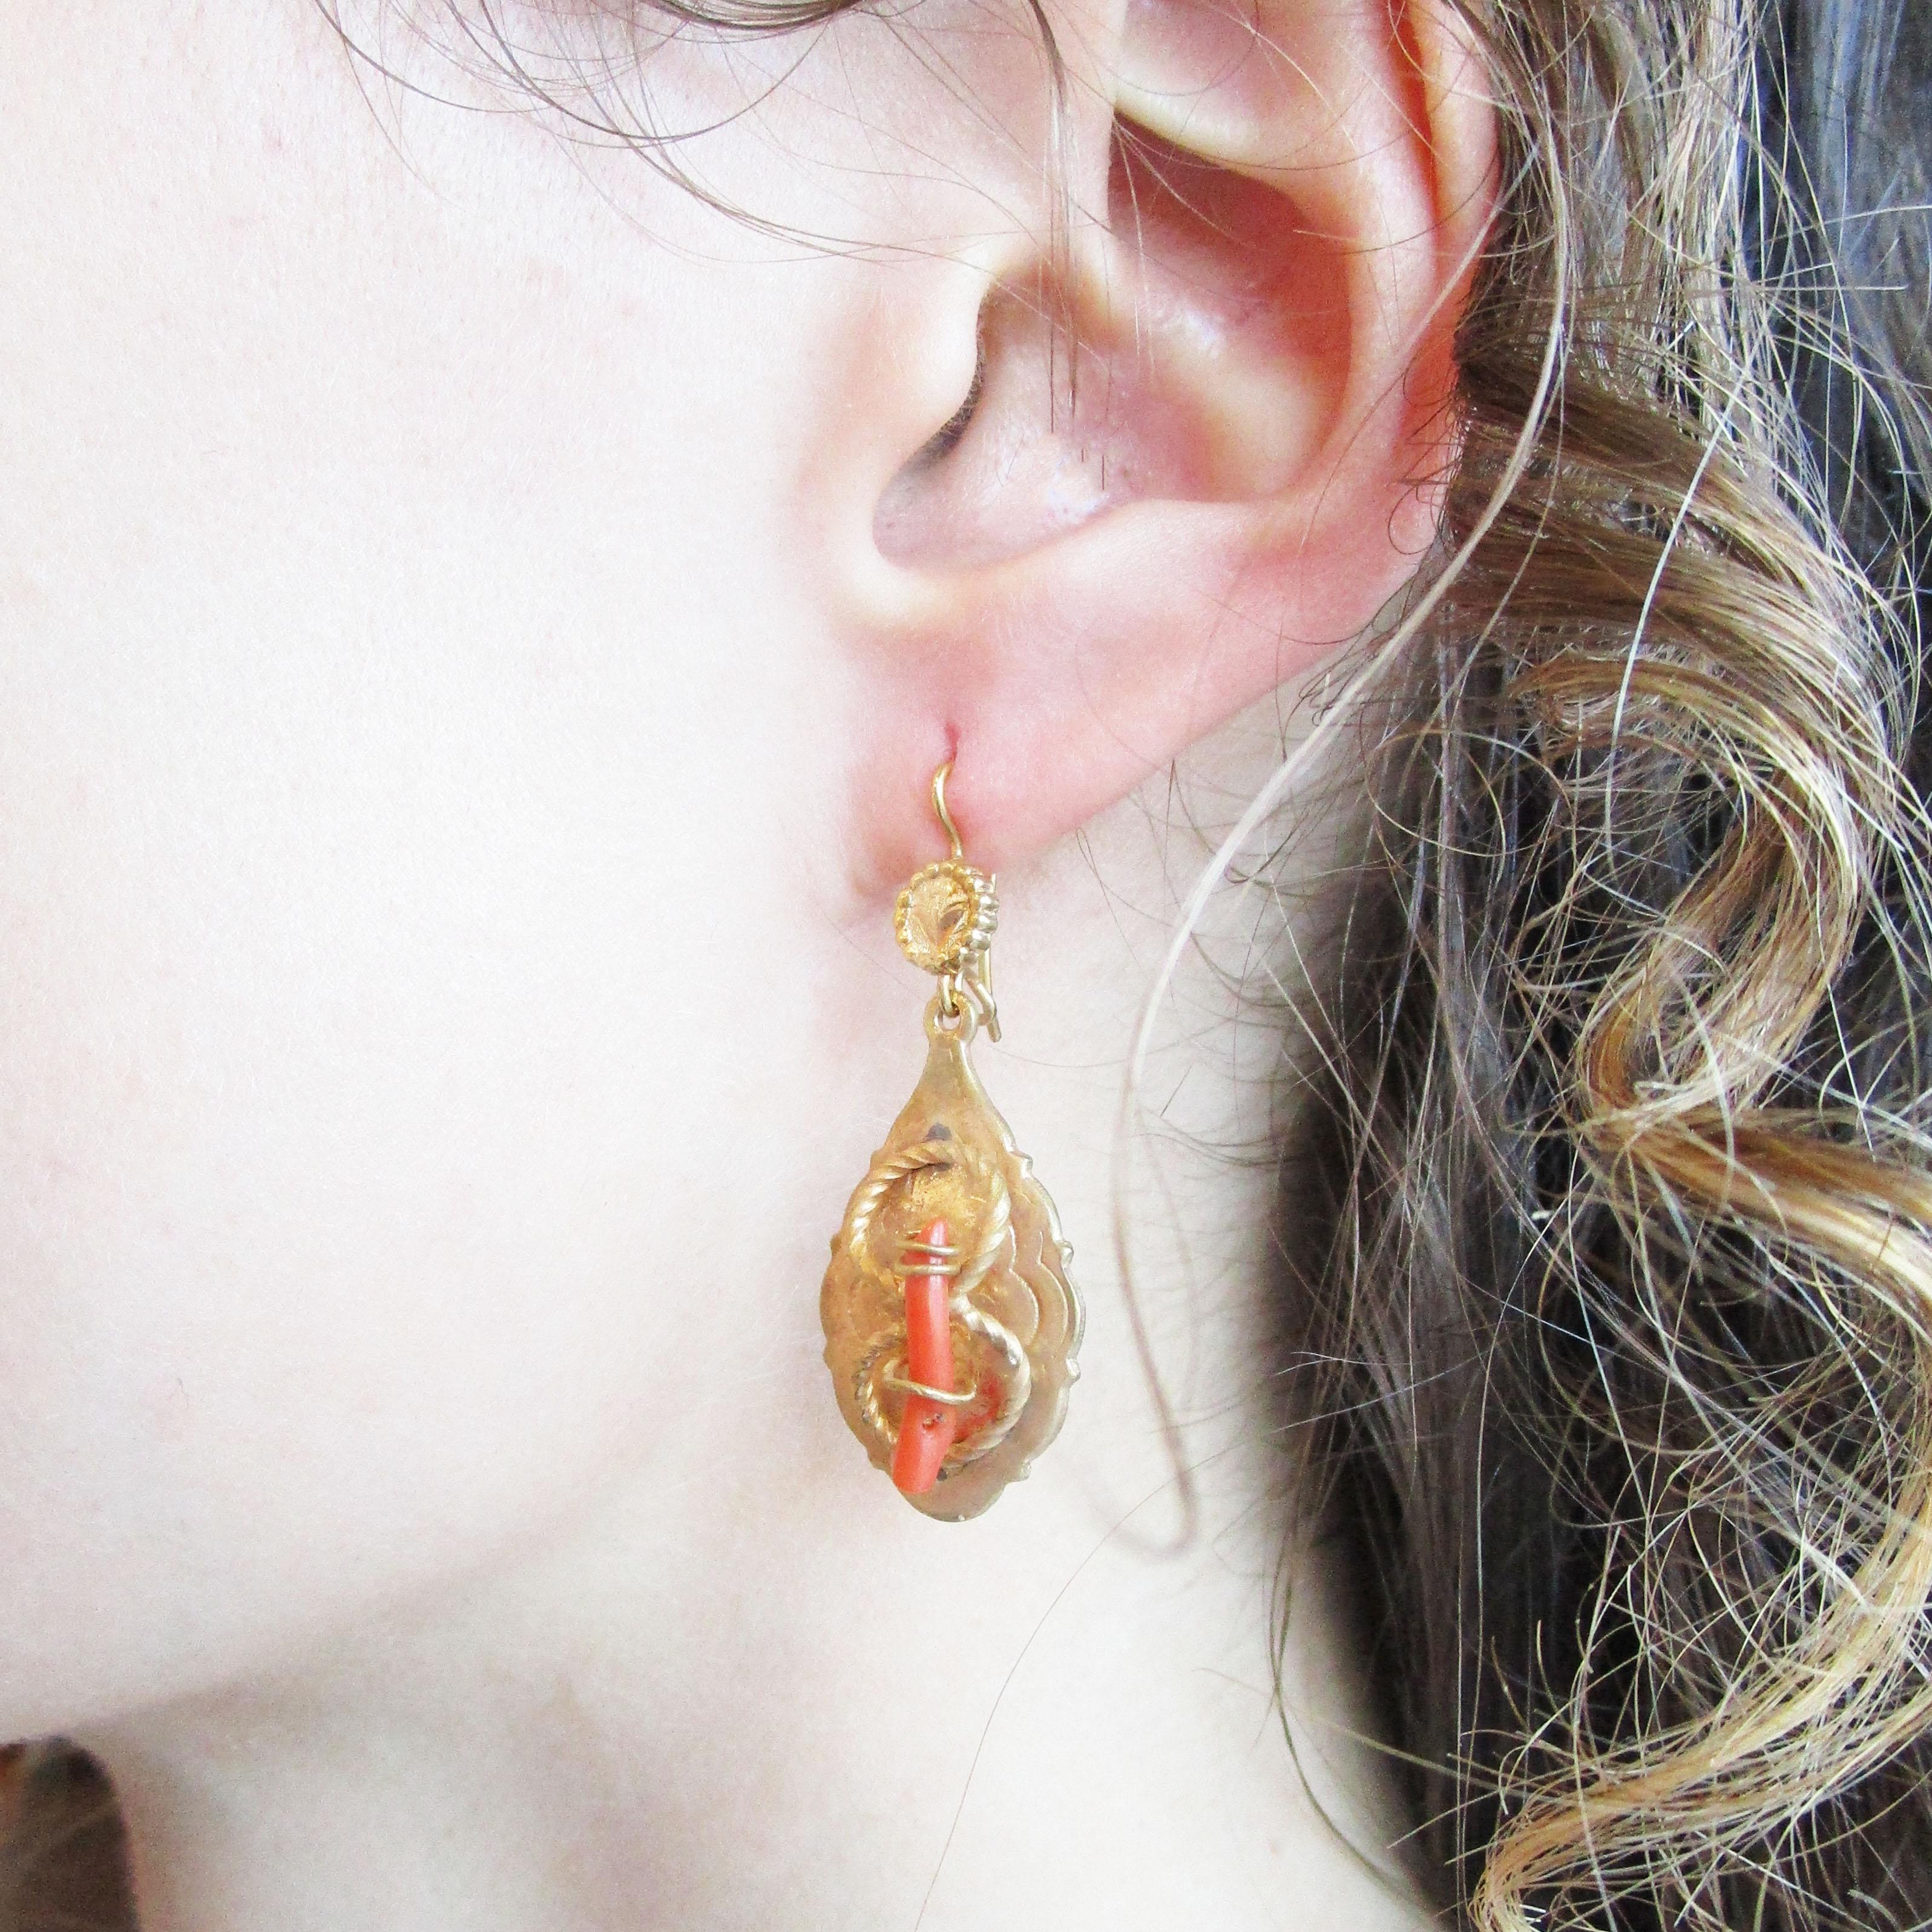 Dies ist ein atemberaubendes Paar viktorianischer Ohrringe aus dem Jahr 1890 mit einer wunderschönen Kombination aus goldgefüllten Drahtdetails und einem ungefärbten roten Korallenzweig in der Mitte. Die Armreifen haben eine längliche Tropfenform,